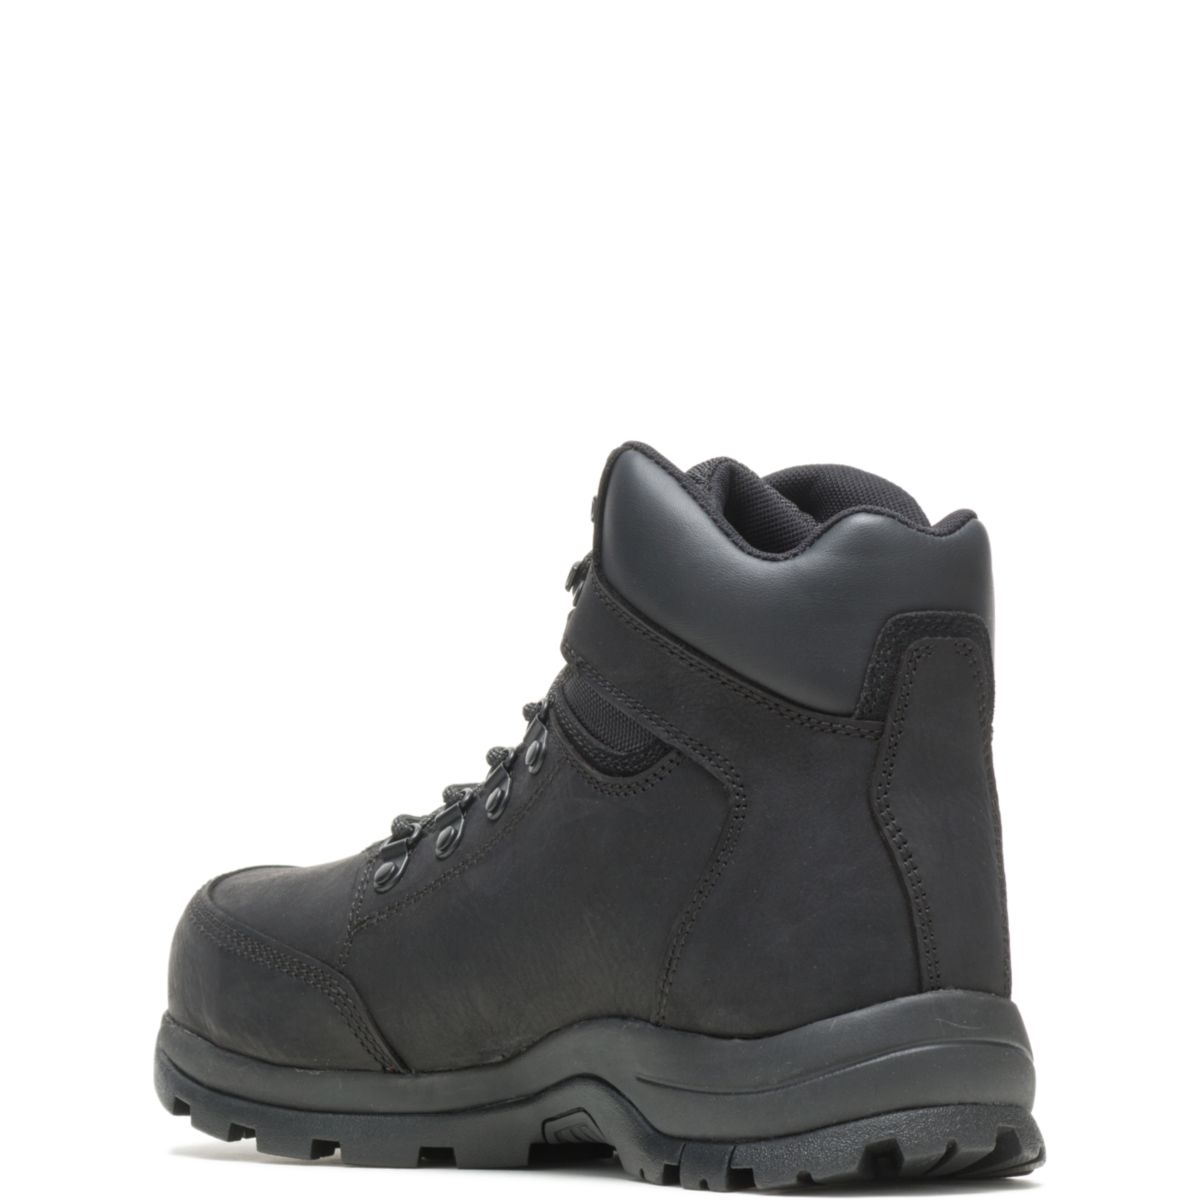 WOLVERINE Men's Grayson Steel Toe Waterproof Work Boot Black - W211042 BLACK - BLACK, 9.5 X-Wide